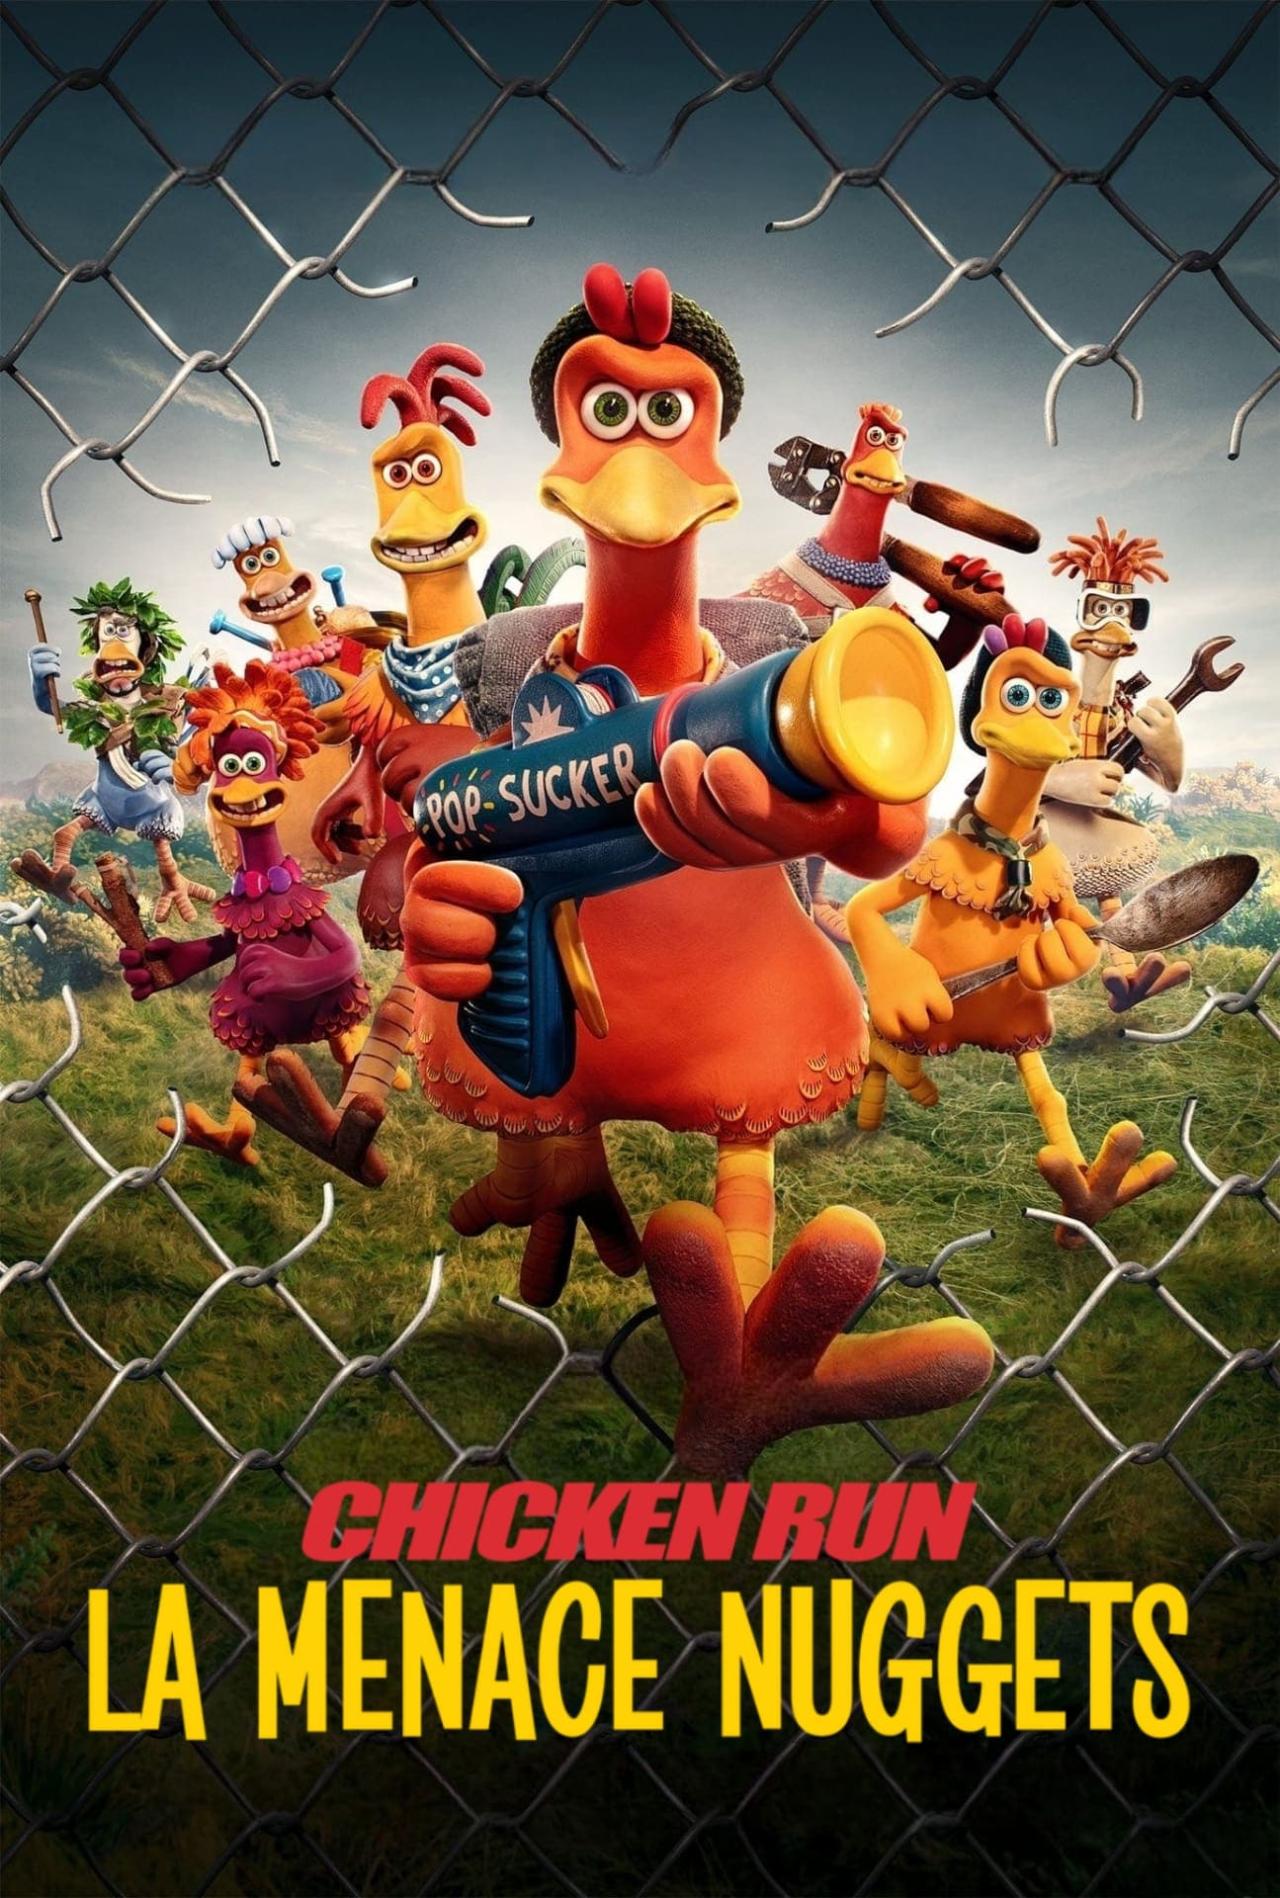 Chicken Run : La menace nuggets est-il disponible sur Netflix ou autre ?